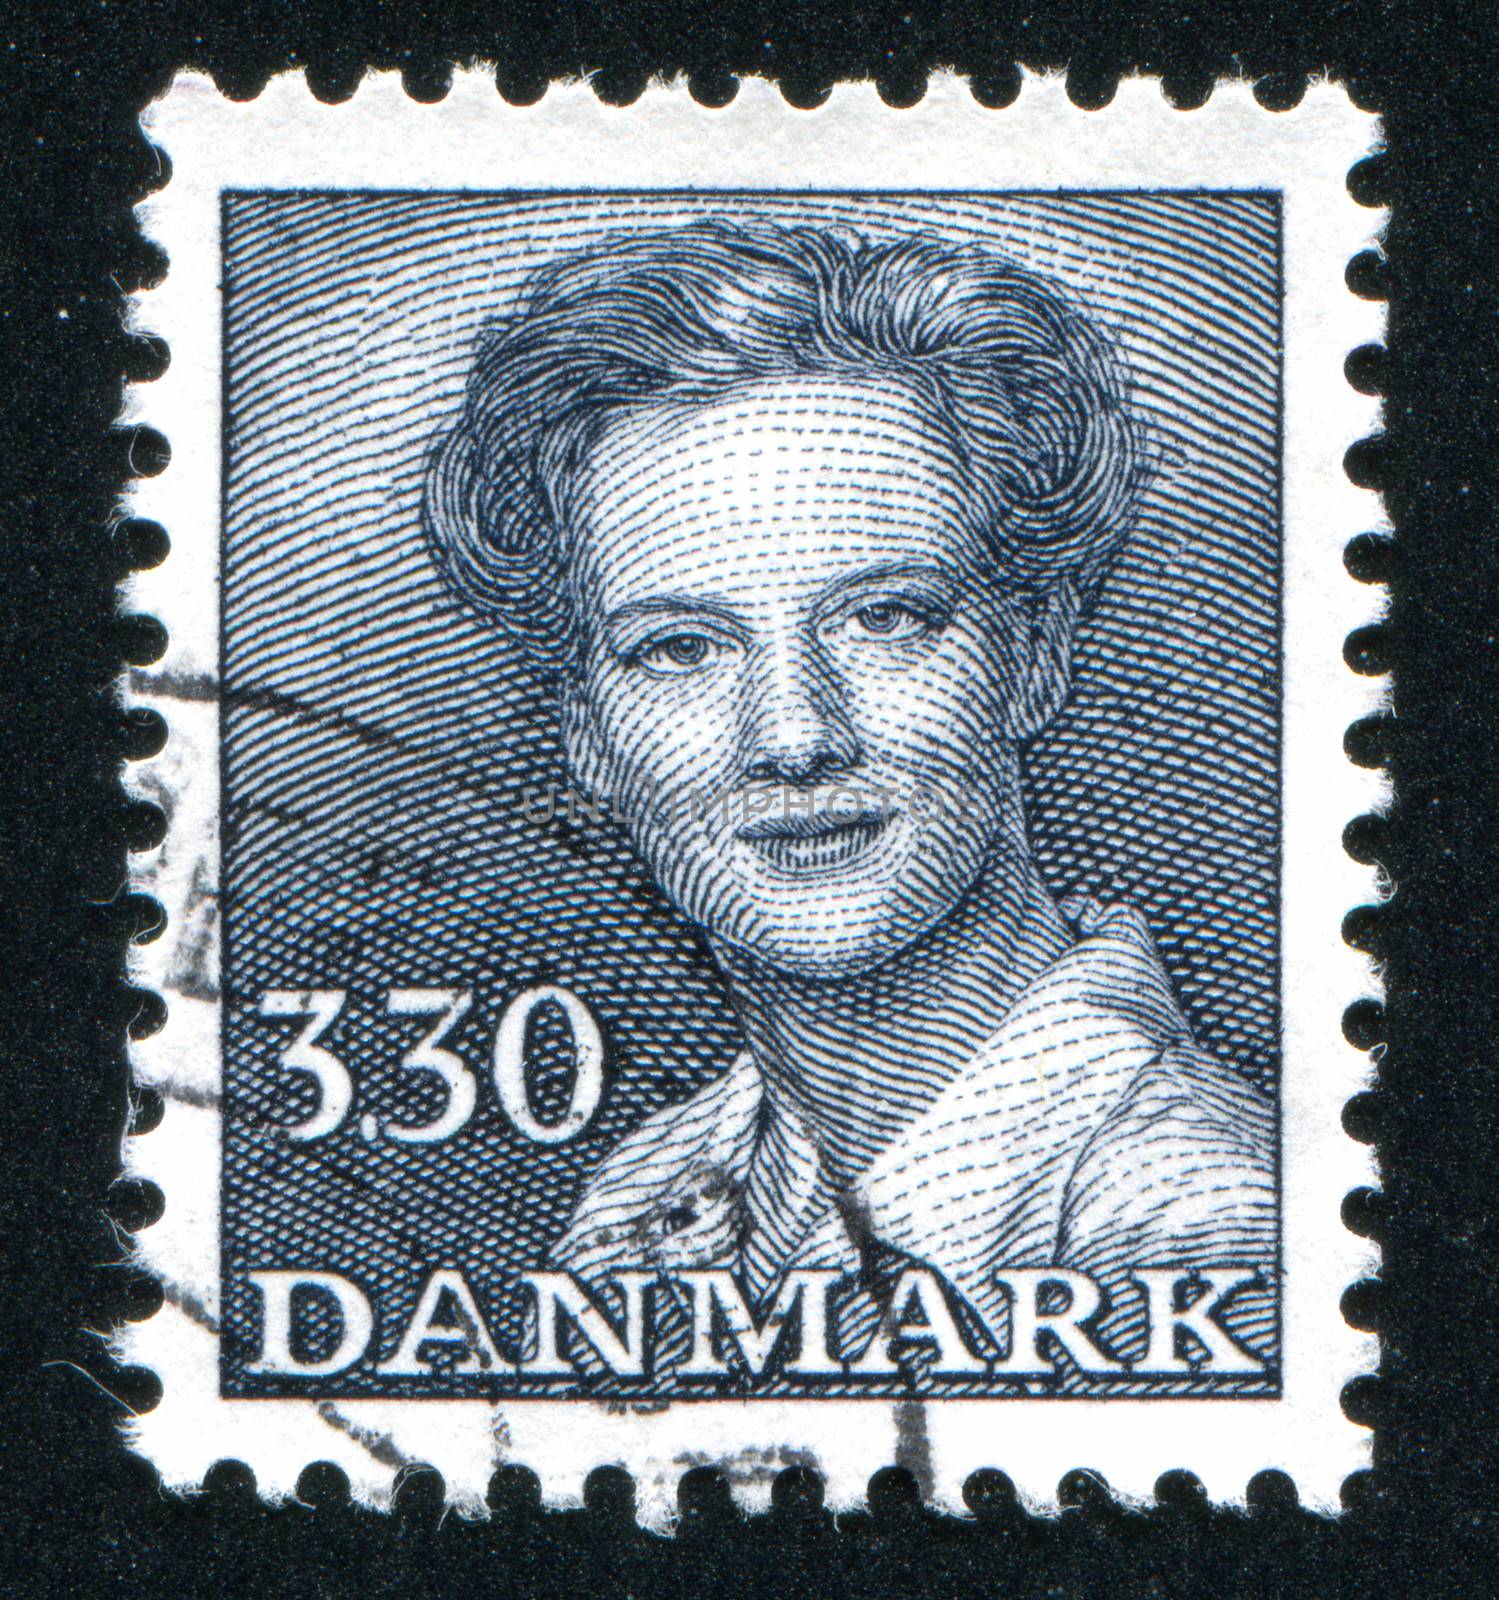 DENMARK - CIRCA 1982: stamp printed by Denmark, shows Queen Margrethe, circa 1982